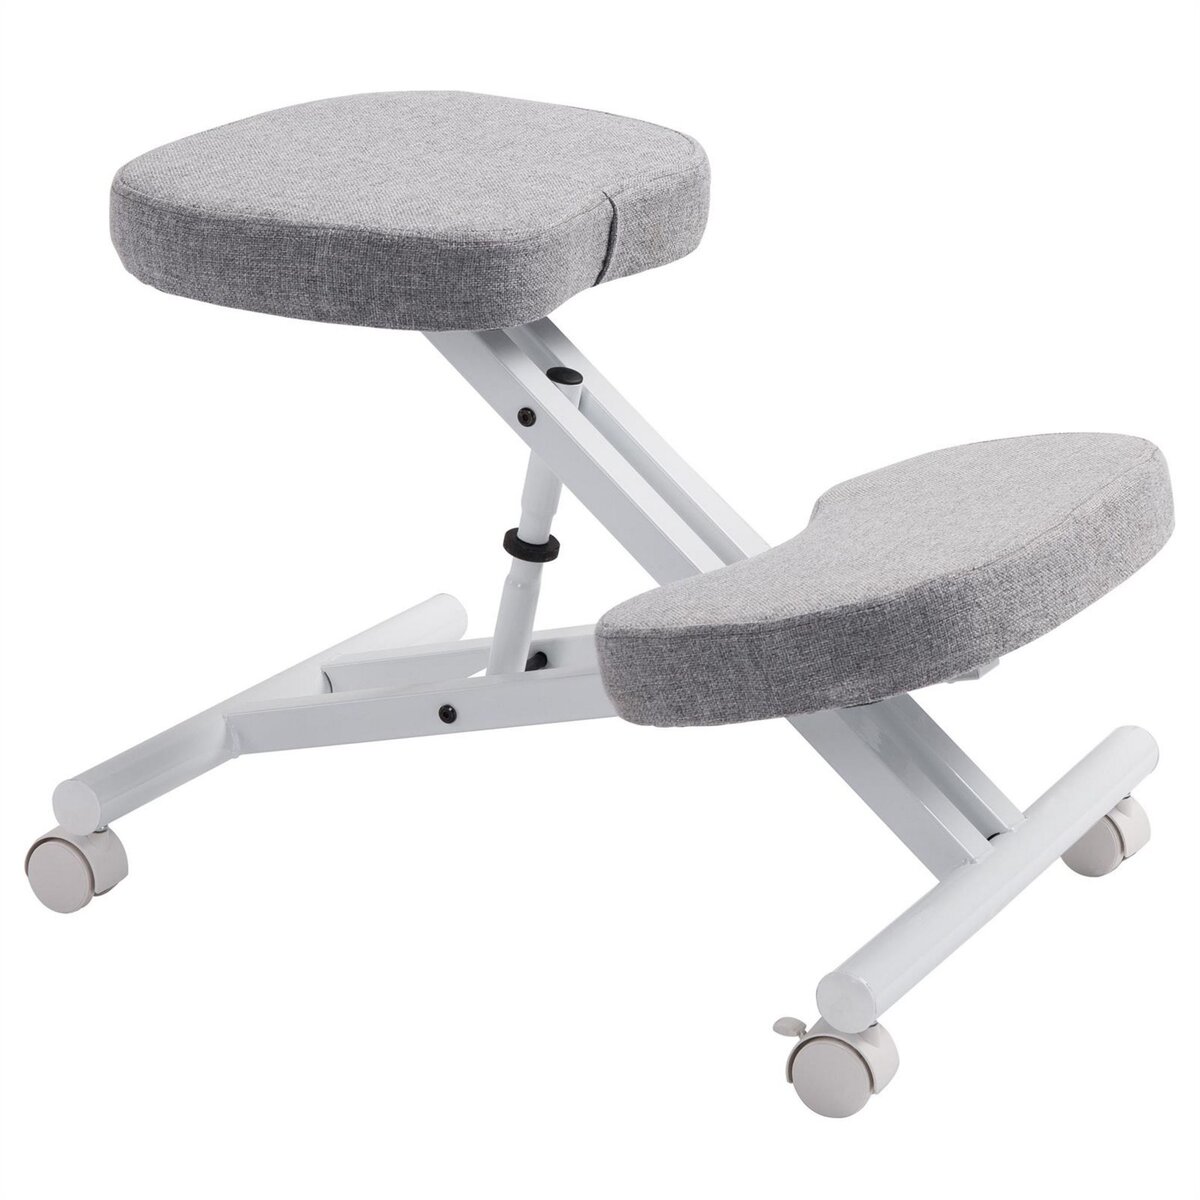 IDIMEX Tabouret ergonomique ROBERT siège ajustable repose genoux chaise de  bureau sans dossier, en métal noir et assise rembourrée gris pas cher 